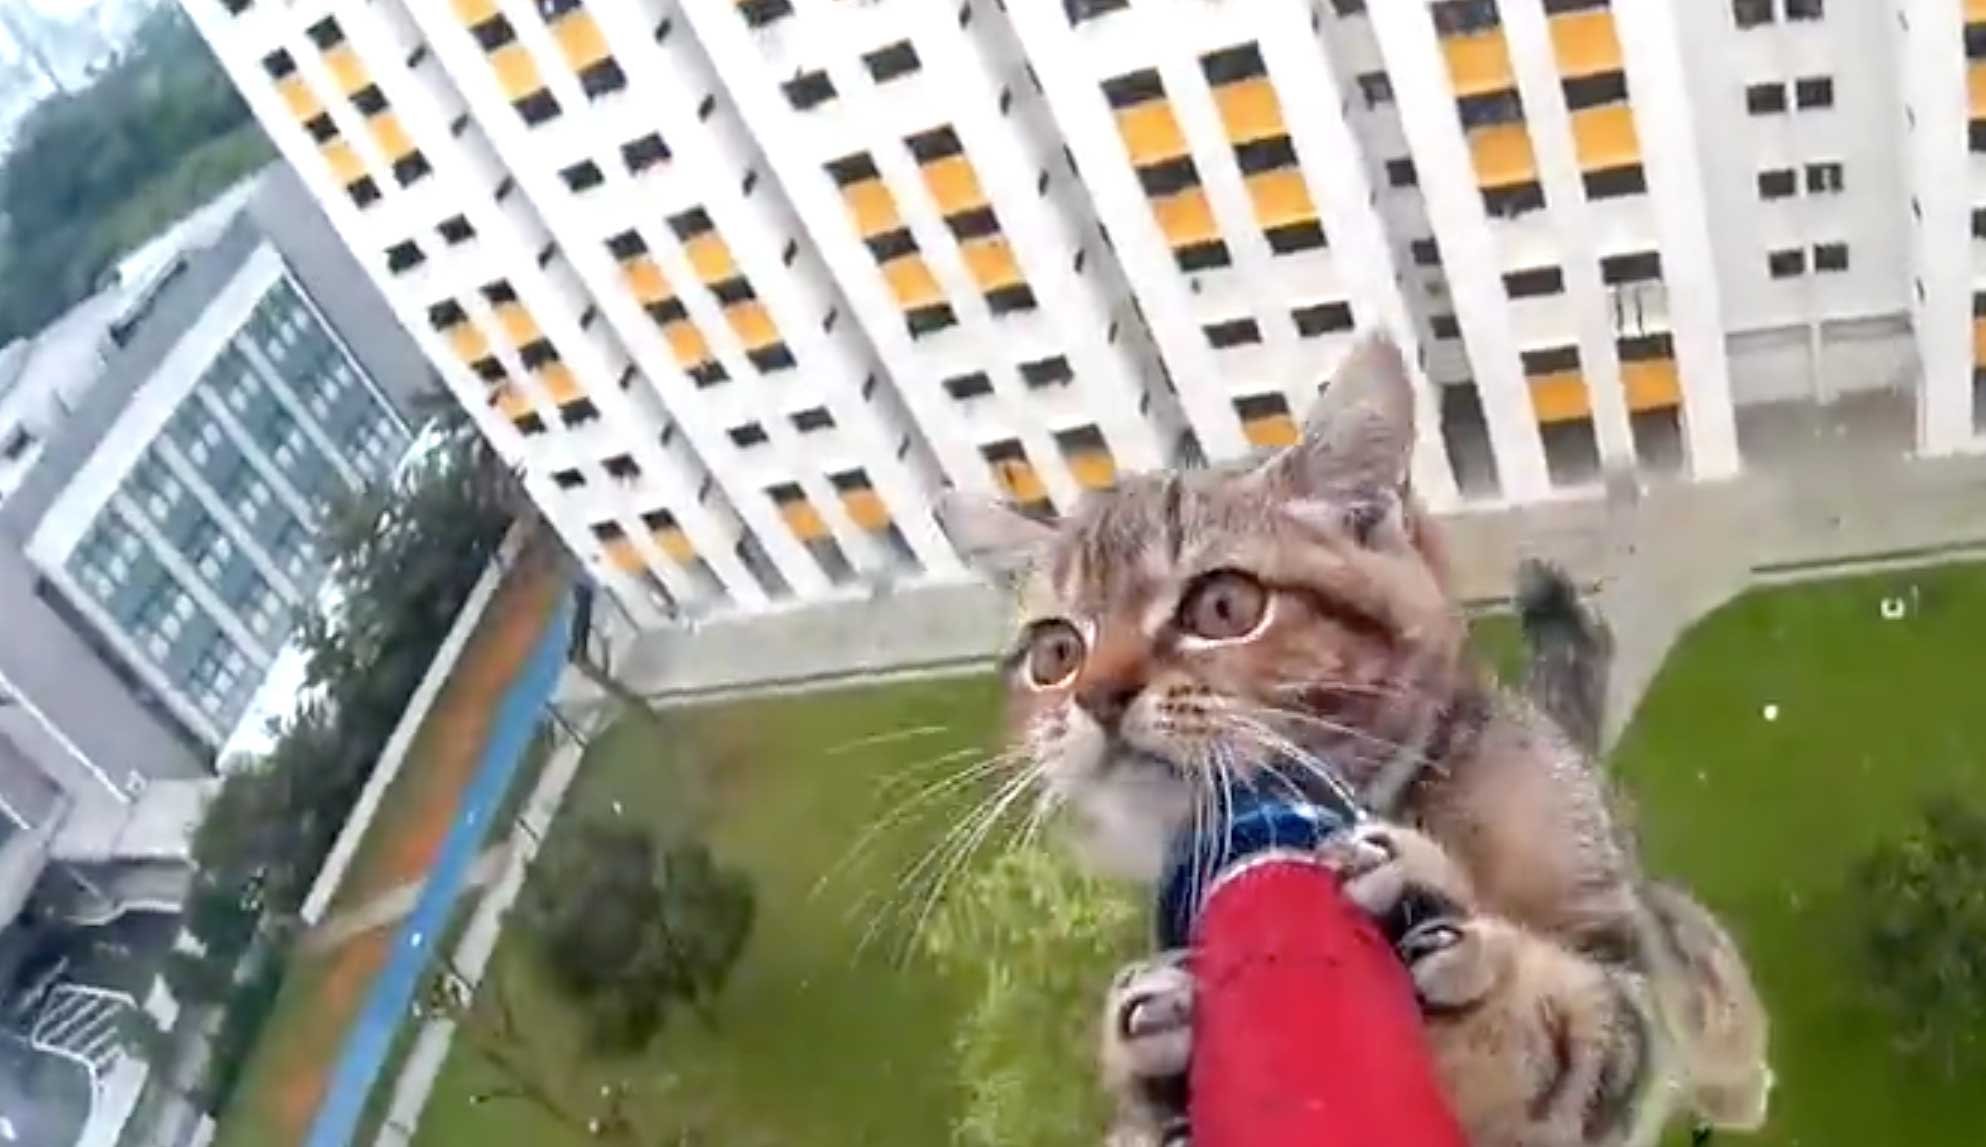 kittensavedfromledge.jpg?resize=1200,630 - Helpless Kitten On A Ledge Saved By Rescue Officer